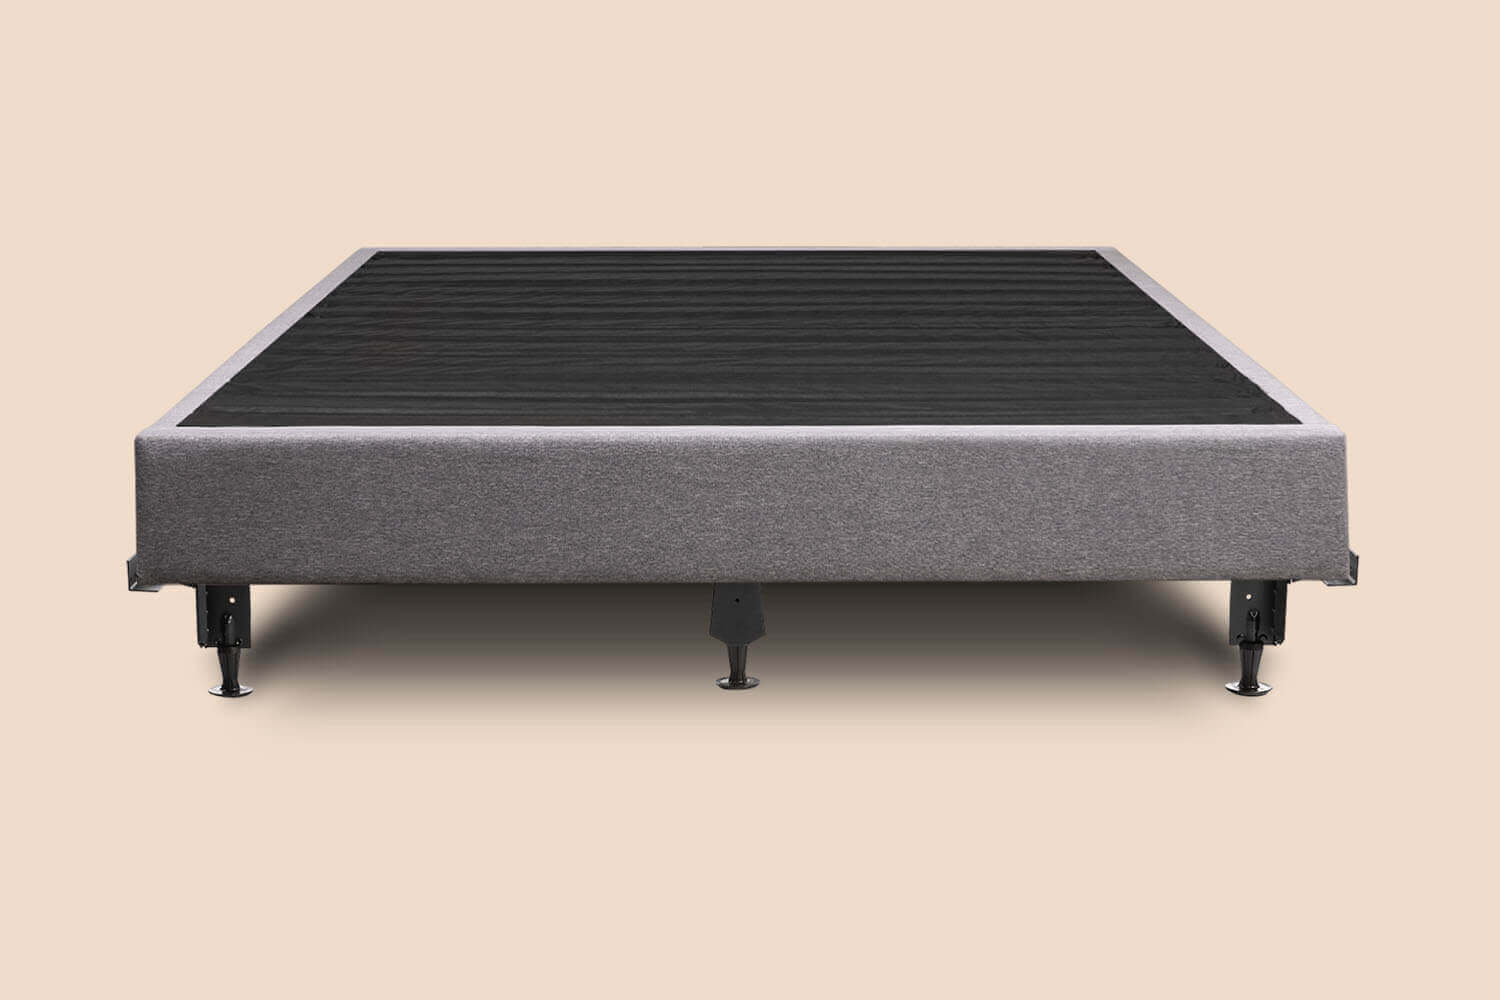 Platform Bed foundation on a metal bed frame